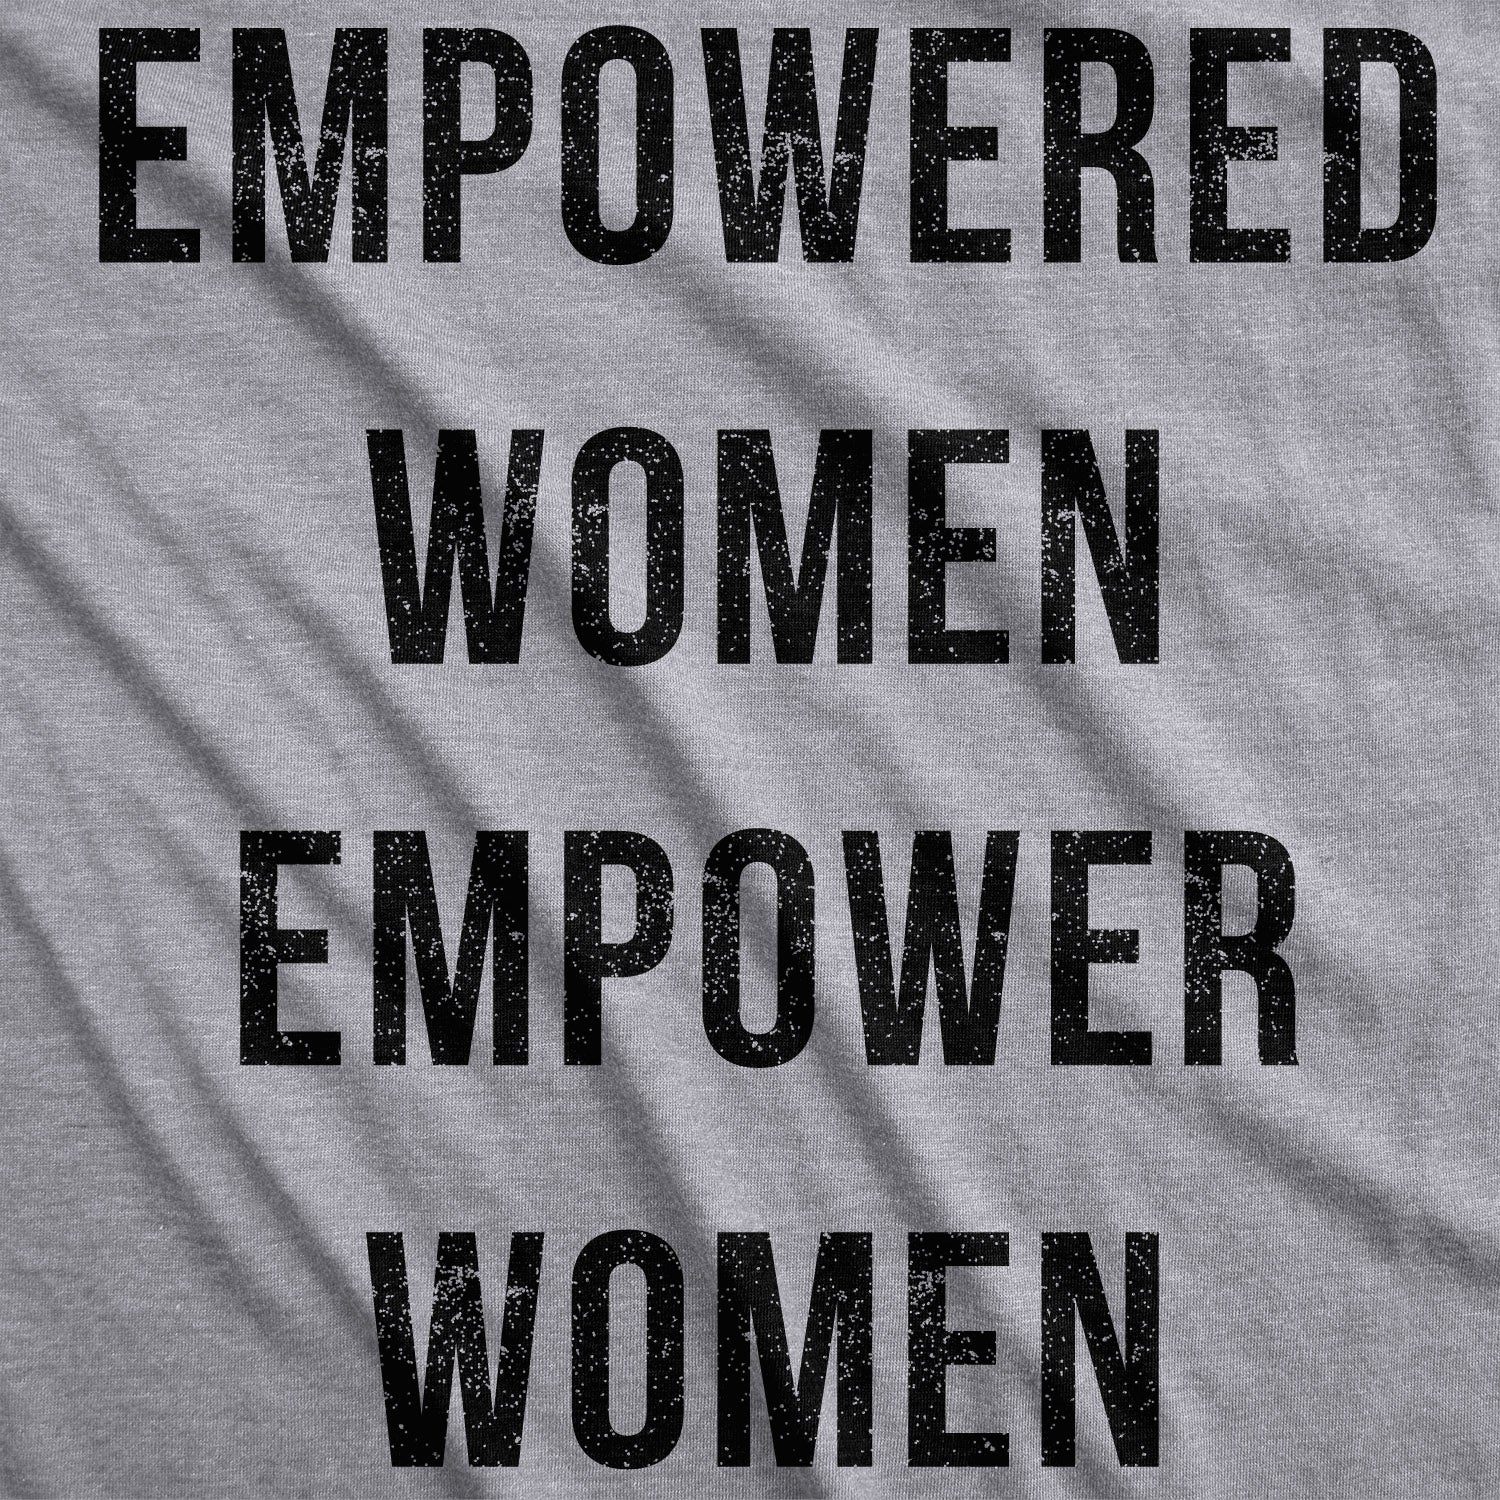 Funny Light Heather Grey Empowered Women Empower Women Womens T Shirt Nerdy Political Tee